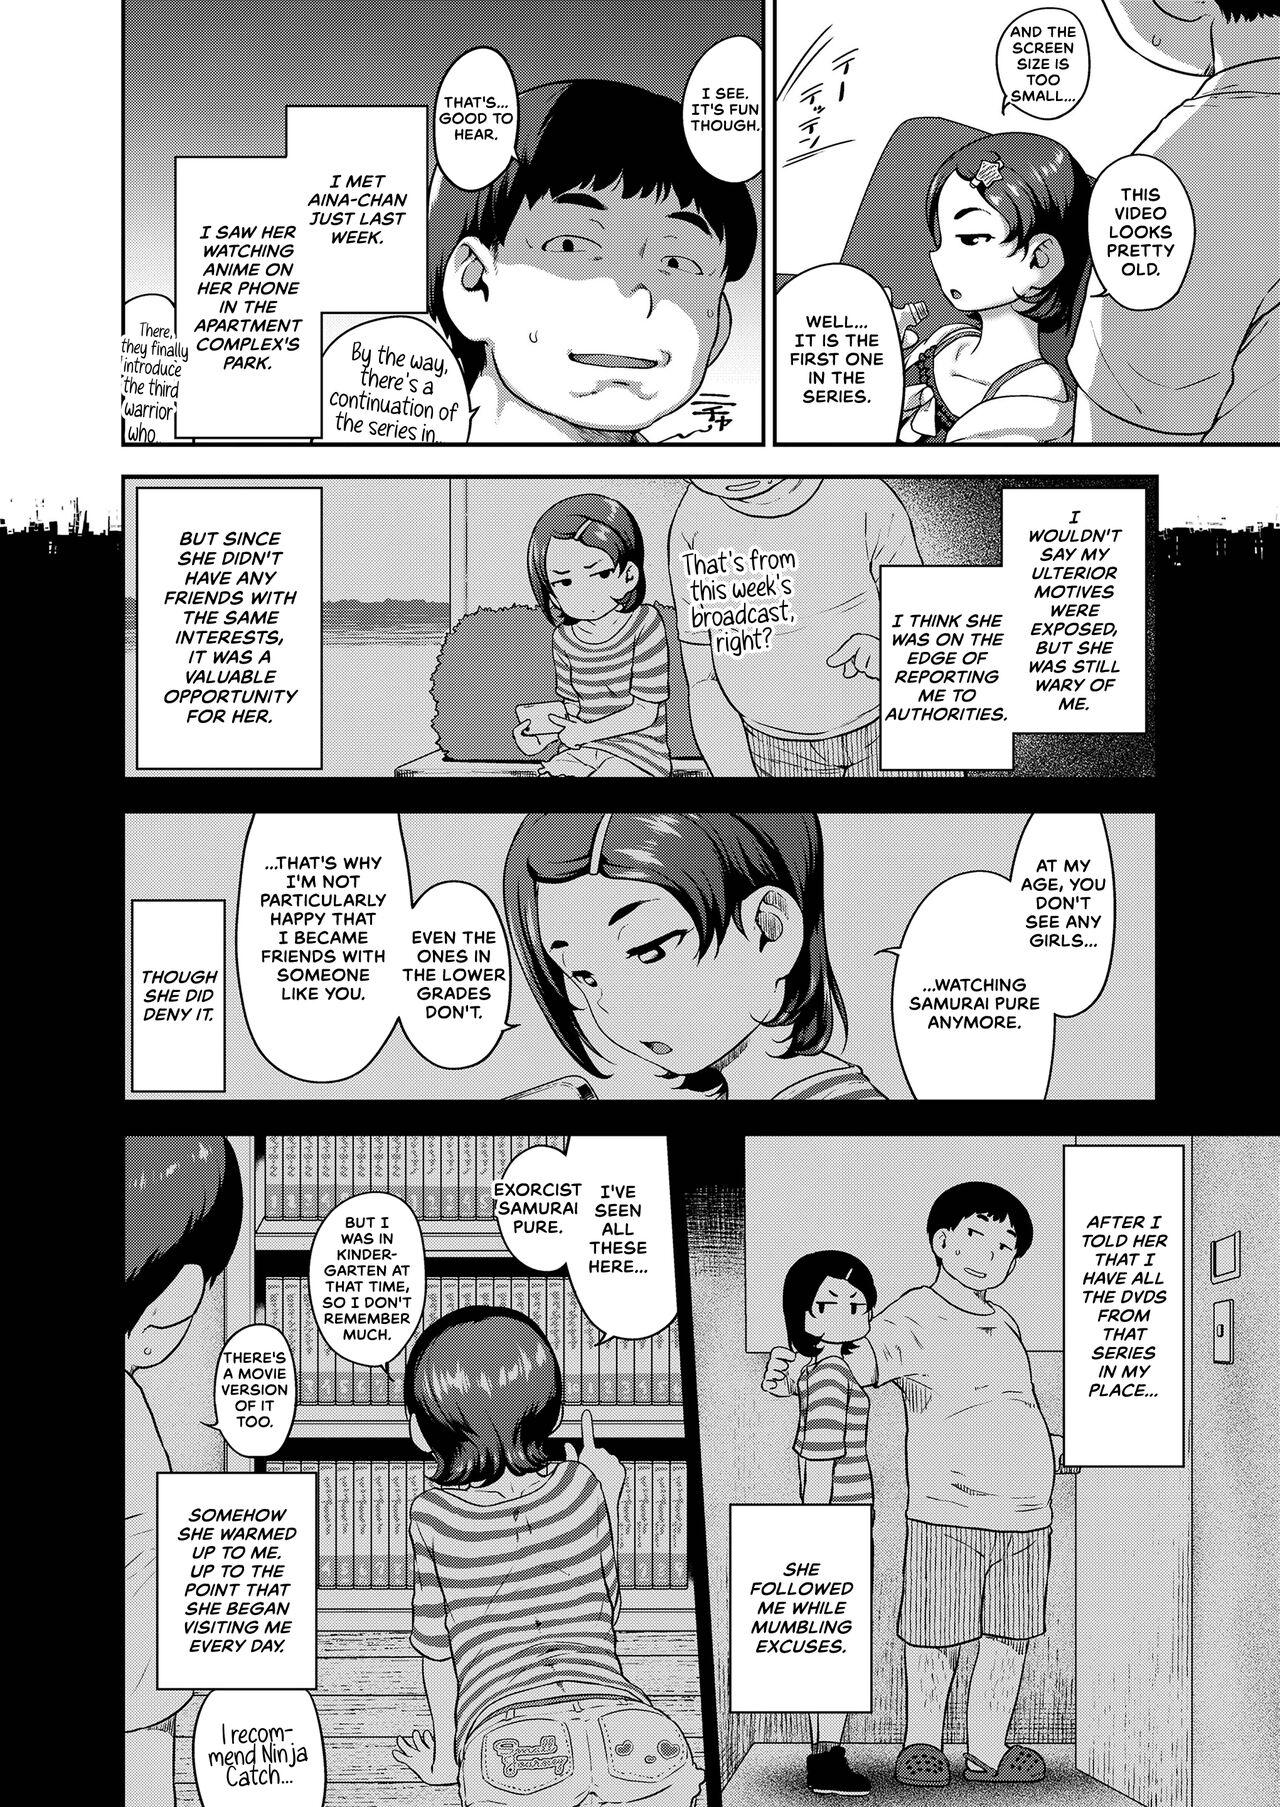 Toys Aina, Anime wo Misete Ageyou Masterbation - Page 2